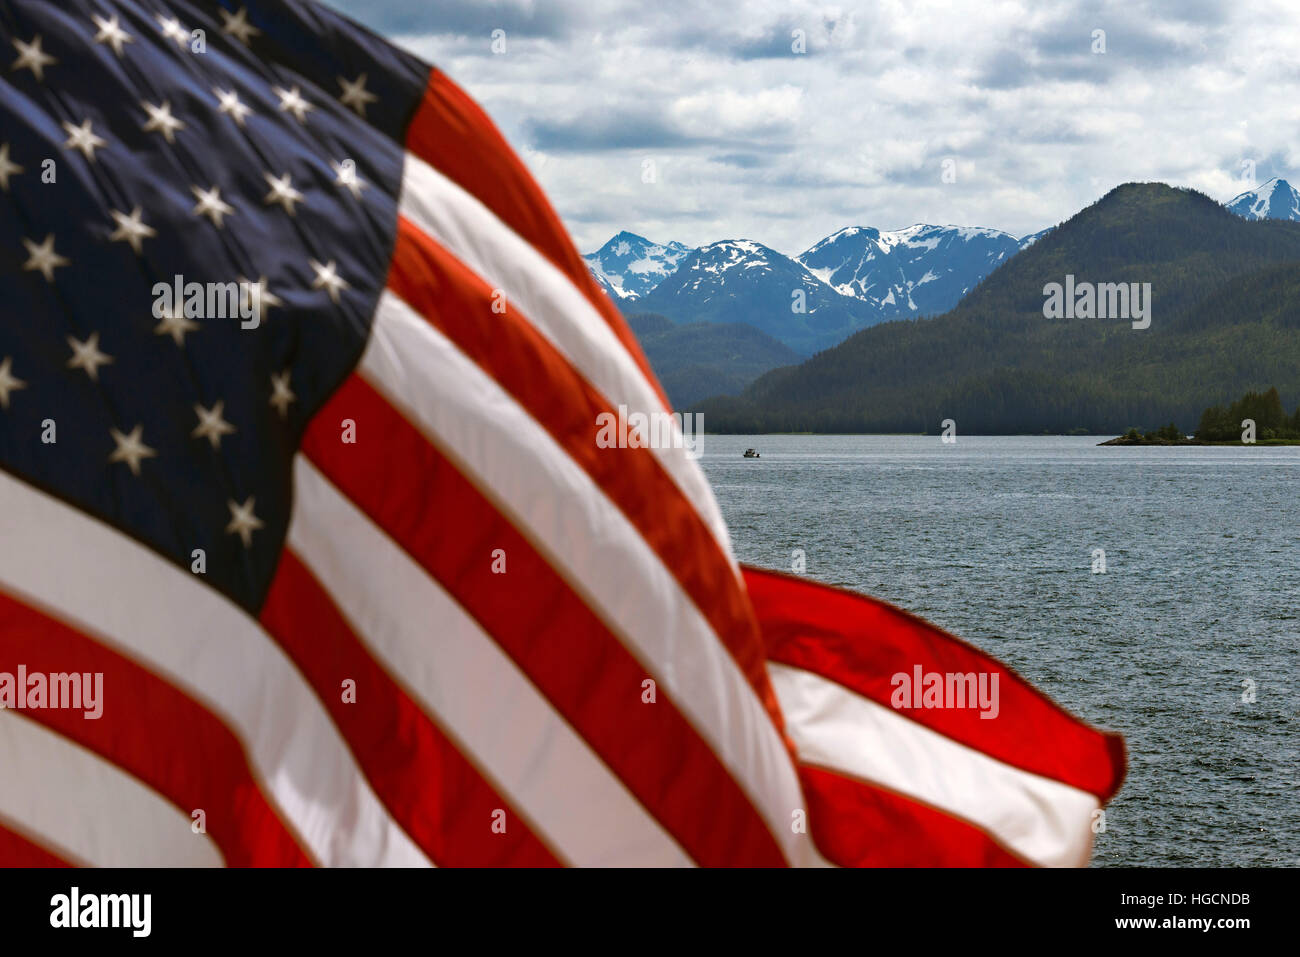 Amerikanische Flagge schwenkten in Safari bemühen. Icy Strait. Glacier Bay National Park and Preserve. chichagof Insel. Juneau. Southeast Alaska. Heute ist der Stockfoto